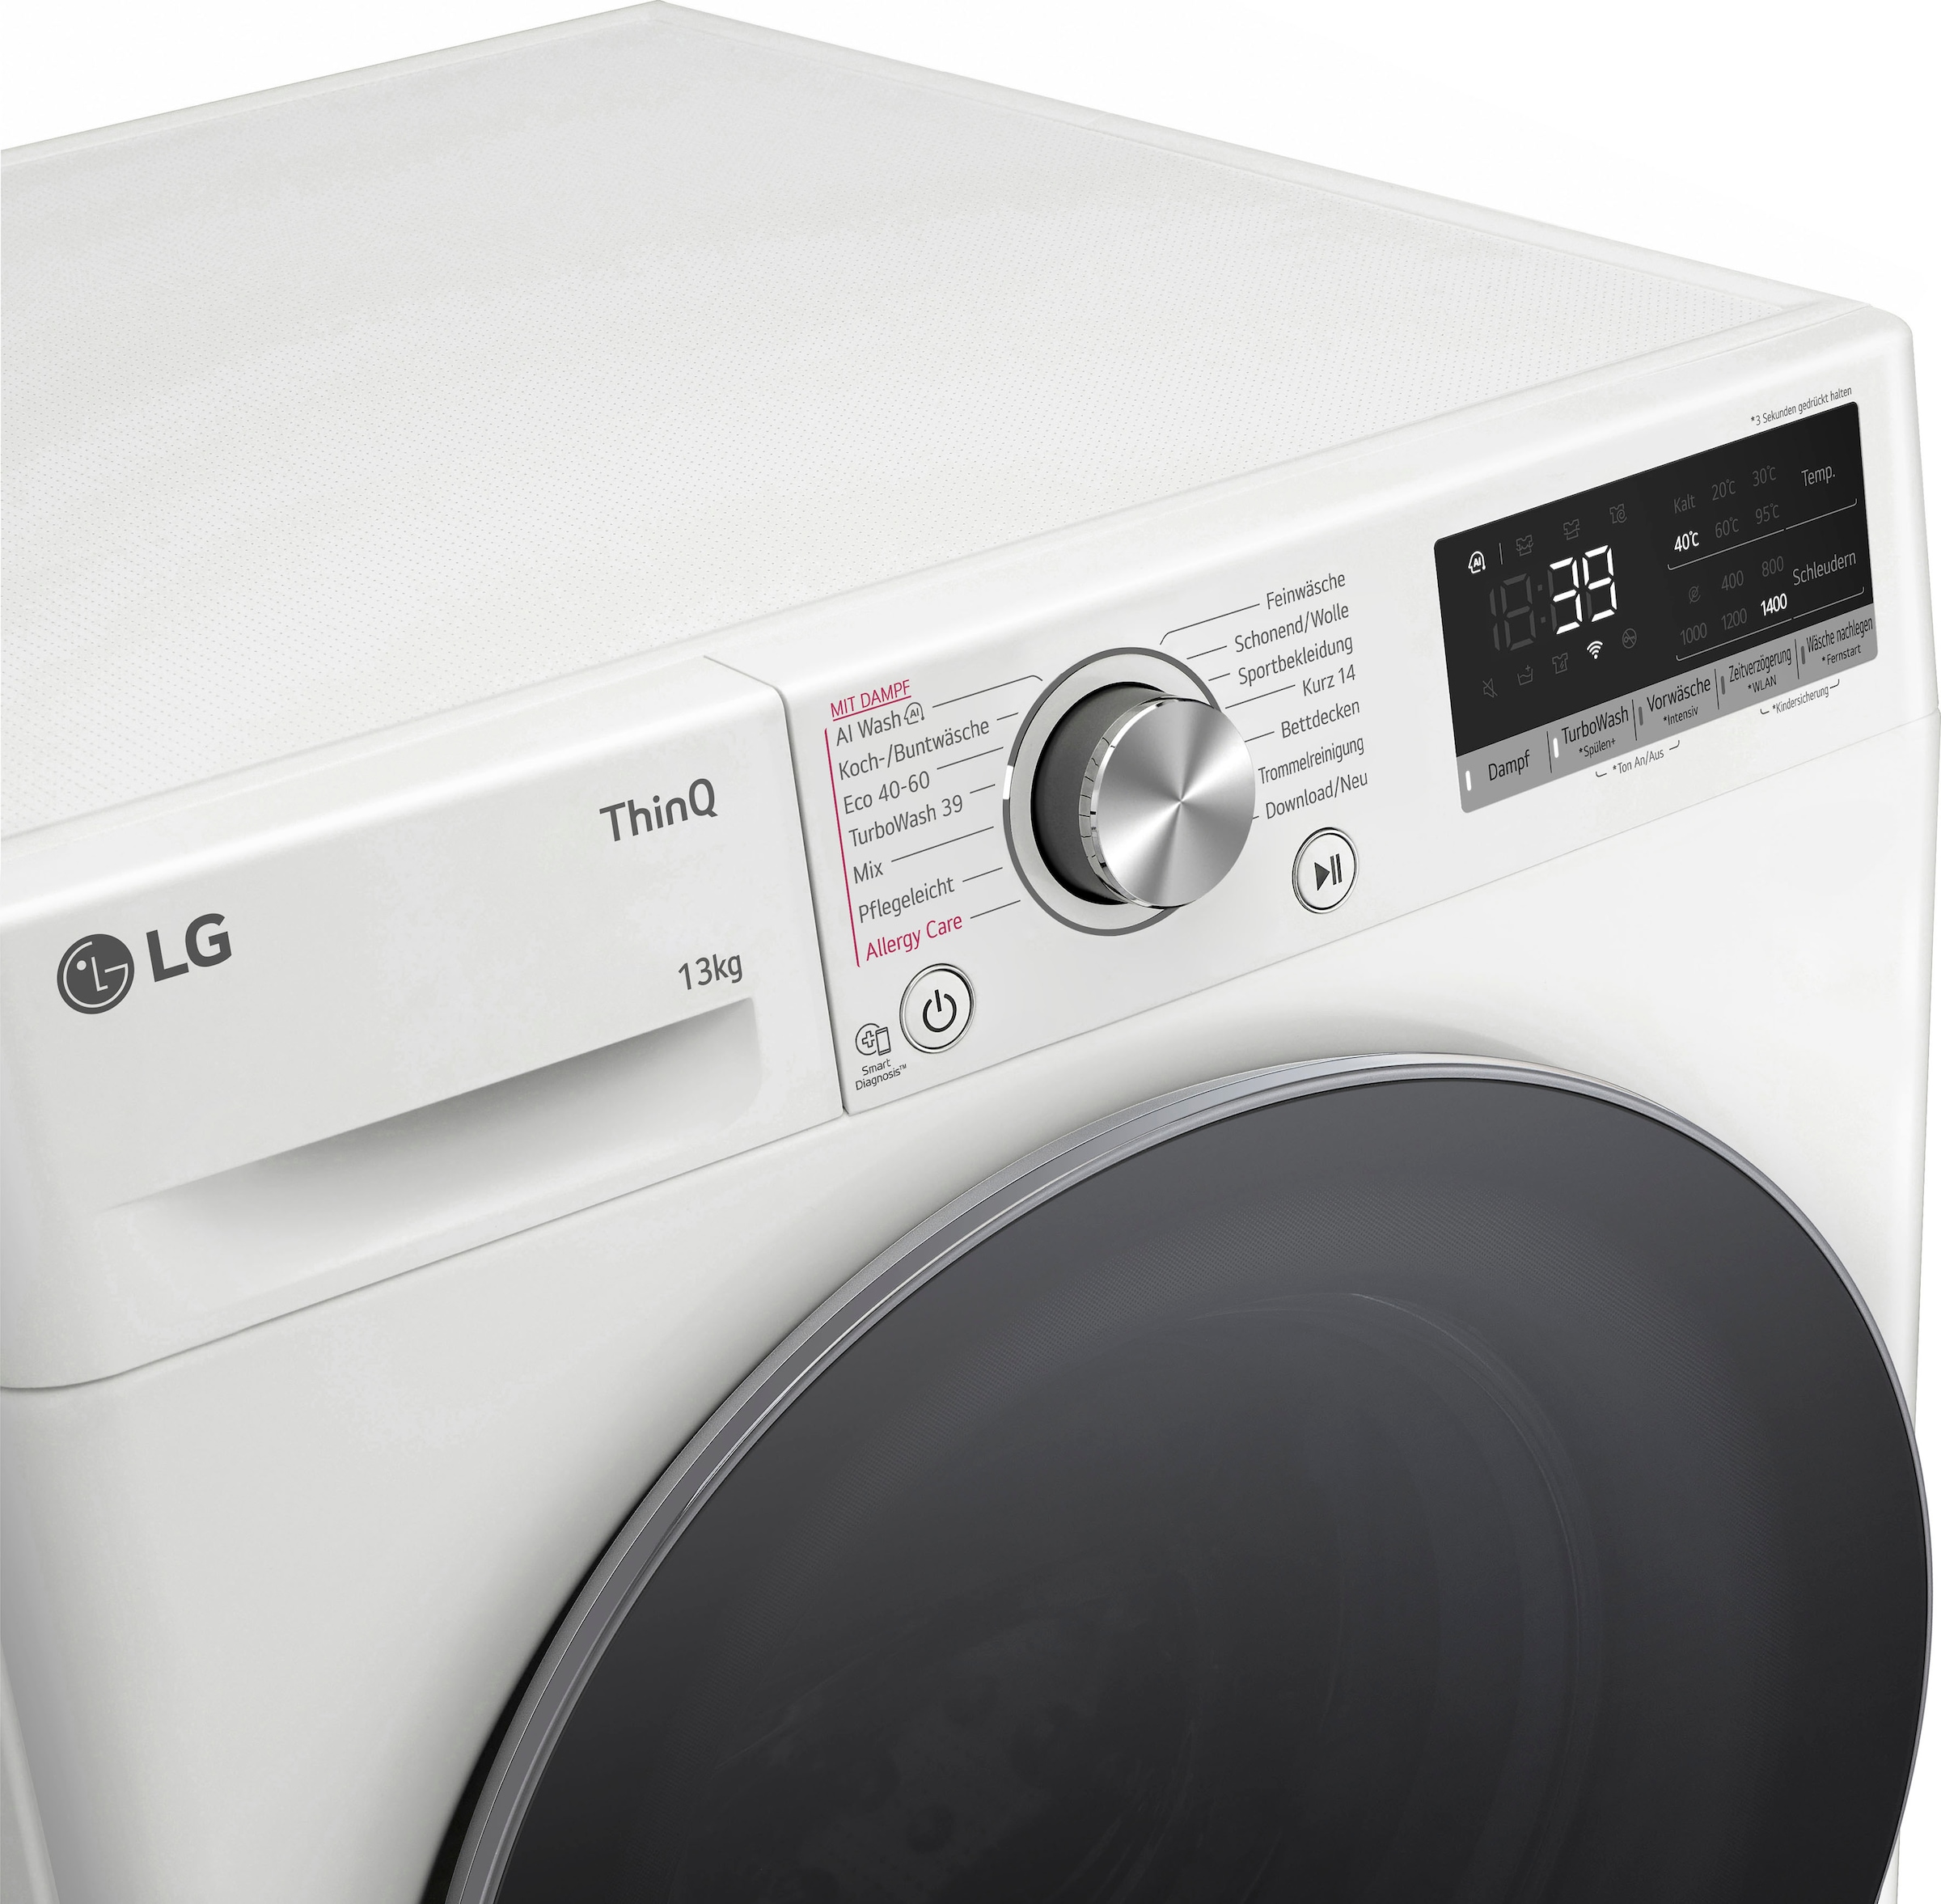 LG Waschmaschine F4WR7031, 7, U/min Serie mit XXL Jahren kg, 13 »F4WR7031«, 1400 3 Garantie